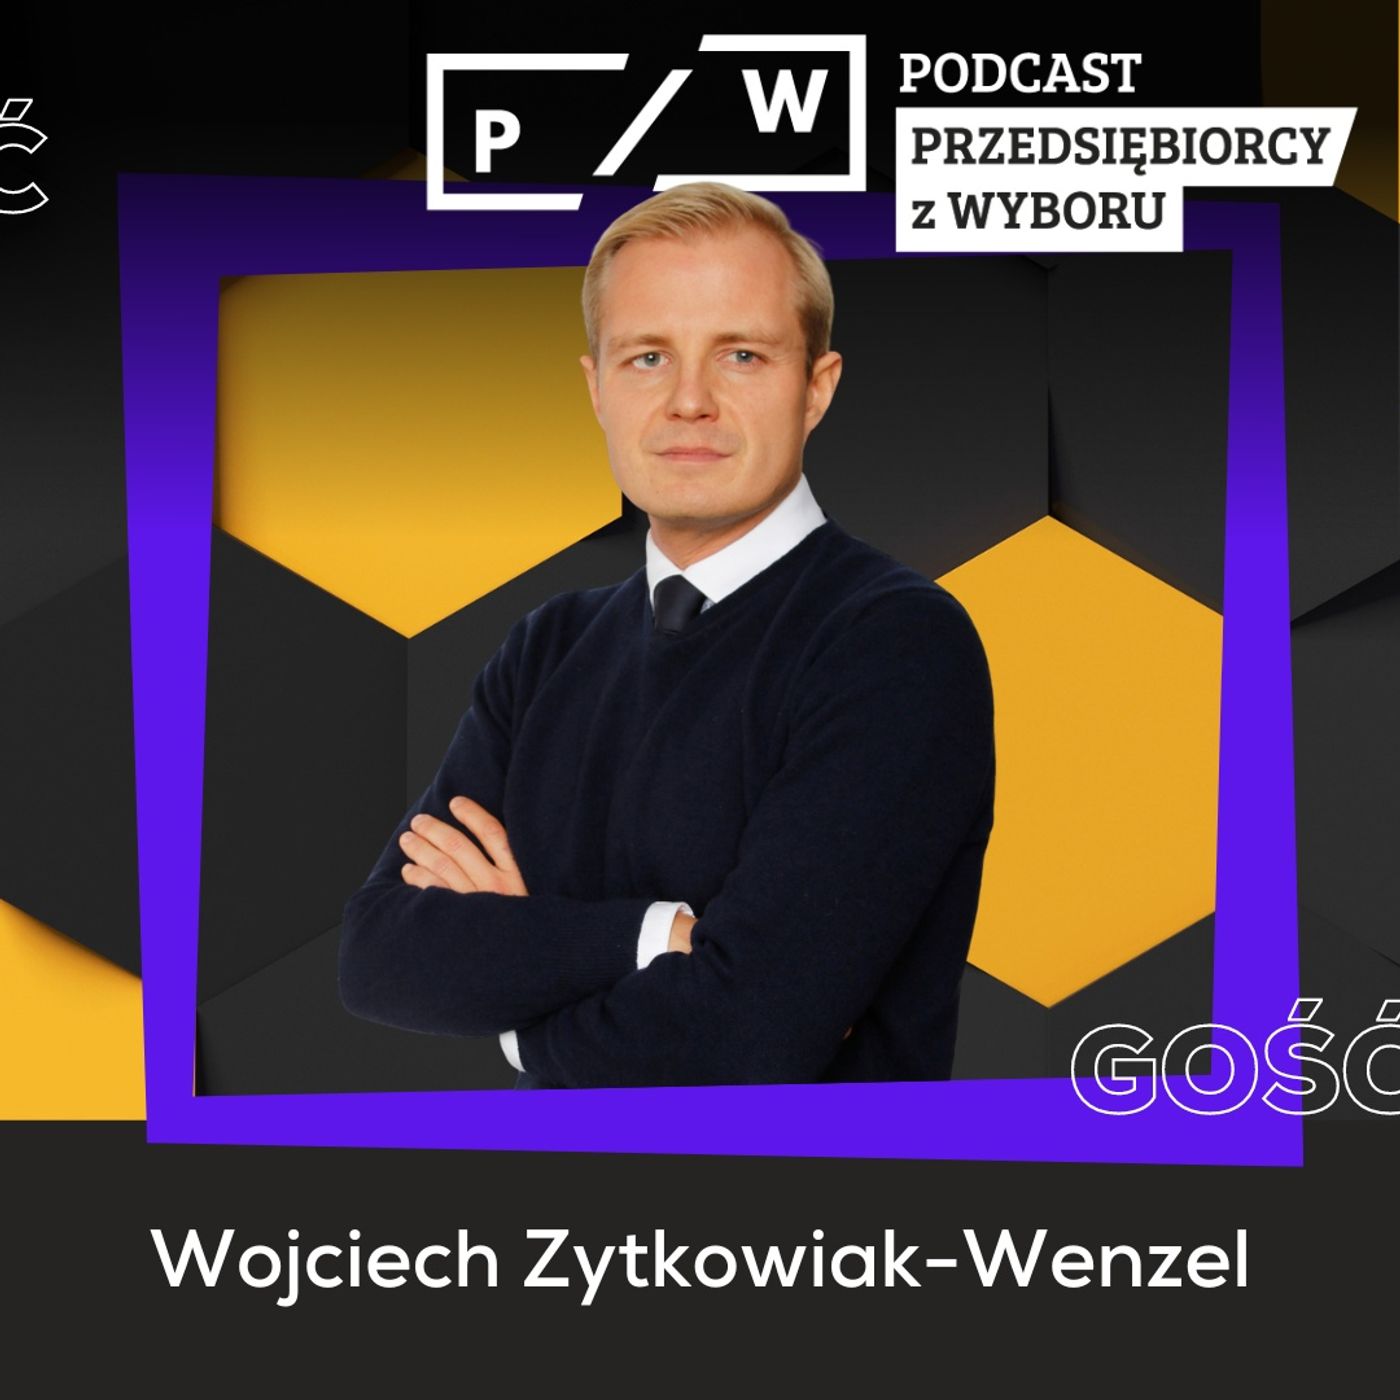 #116 Praca z domu poza domem - Wojciech Zytkowiak-Wenzel